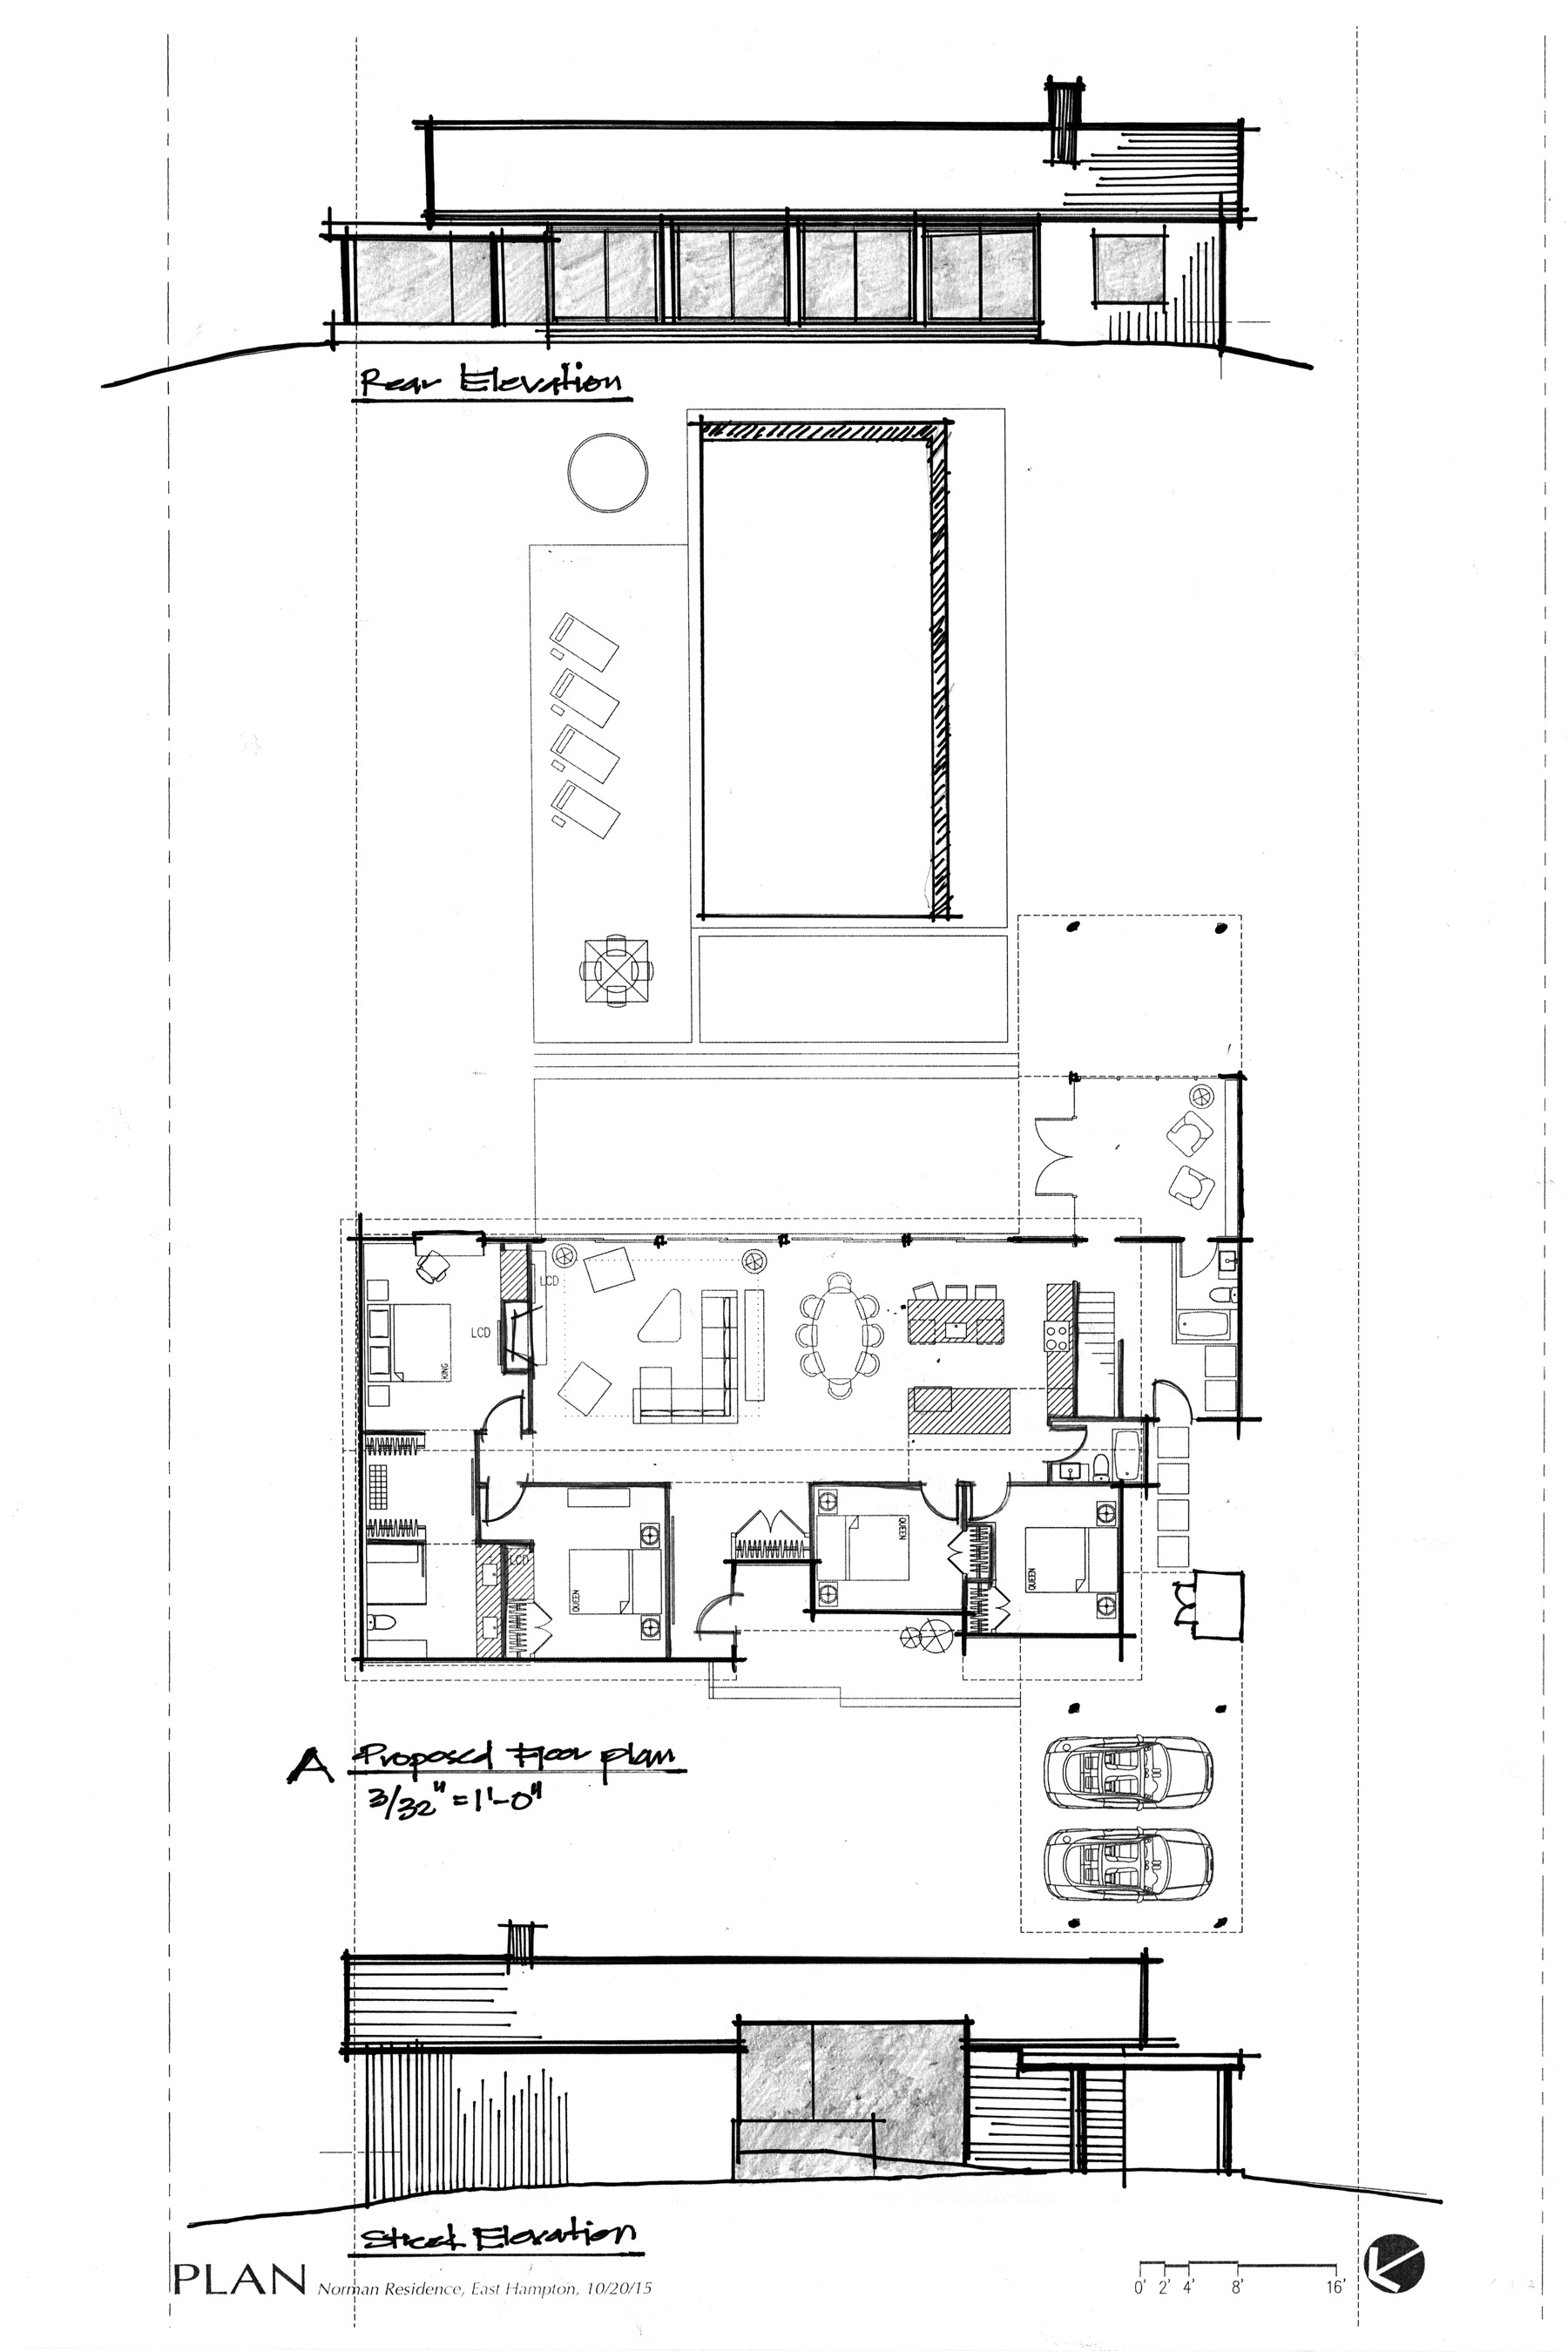 A_Proposed Floor Plan.jpg